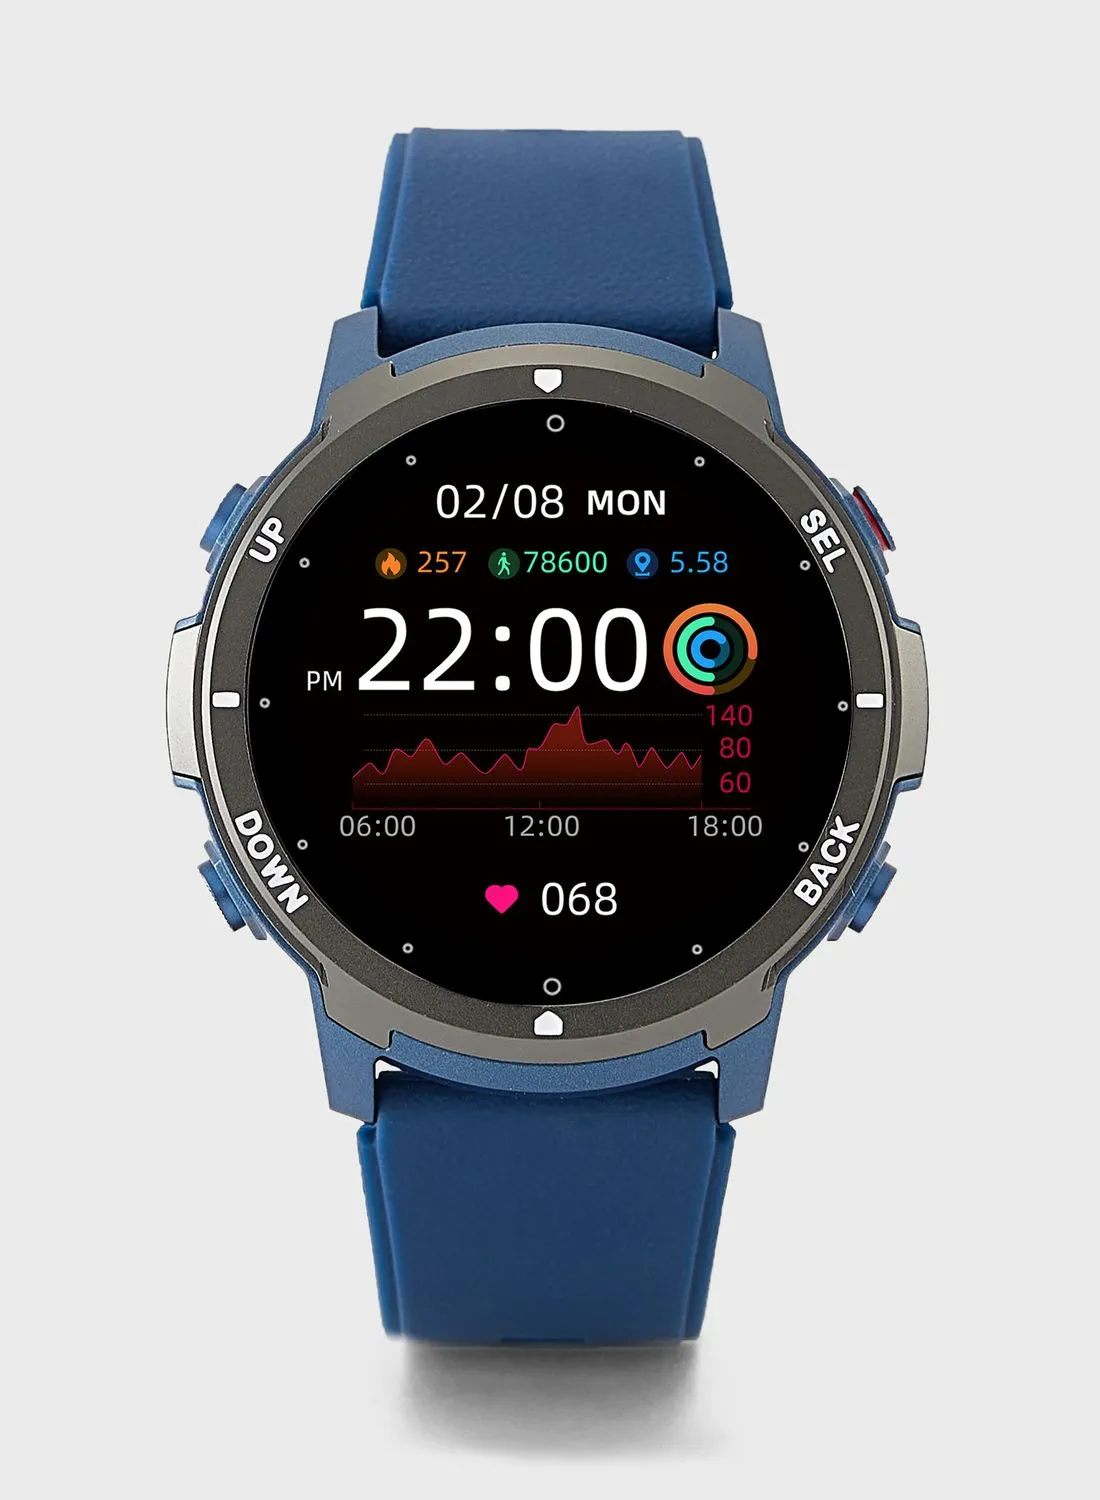 ساعة ذكية سفنتي فايف رياضية مع خاصية الاتصال بالبلوتوث، وميزات متعددة للصحة واللياقة البدنية